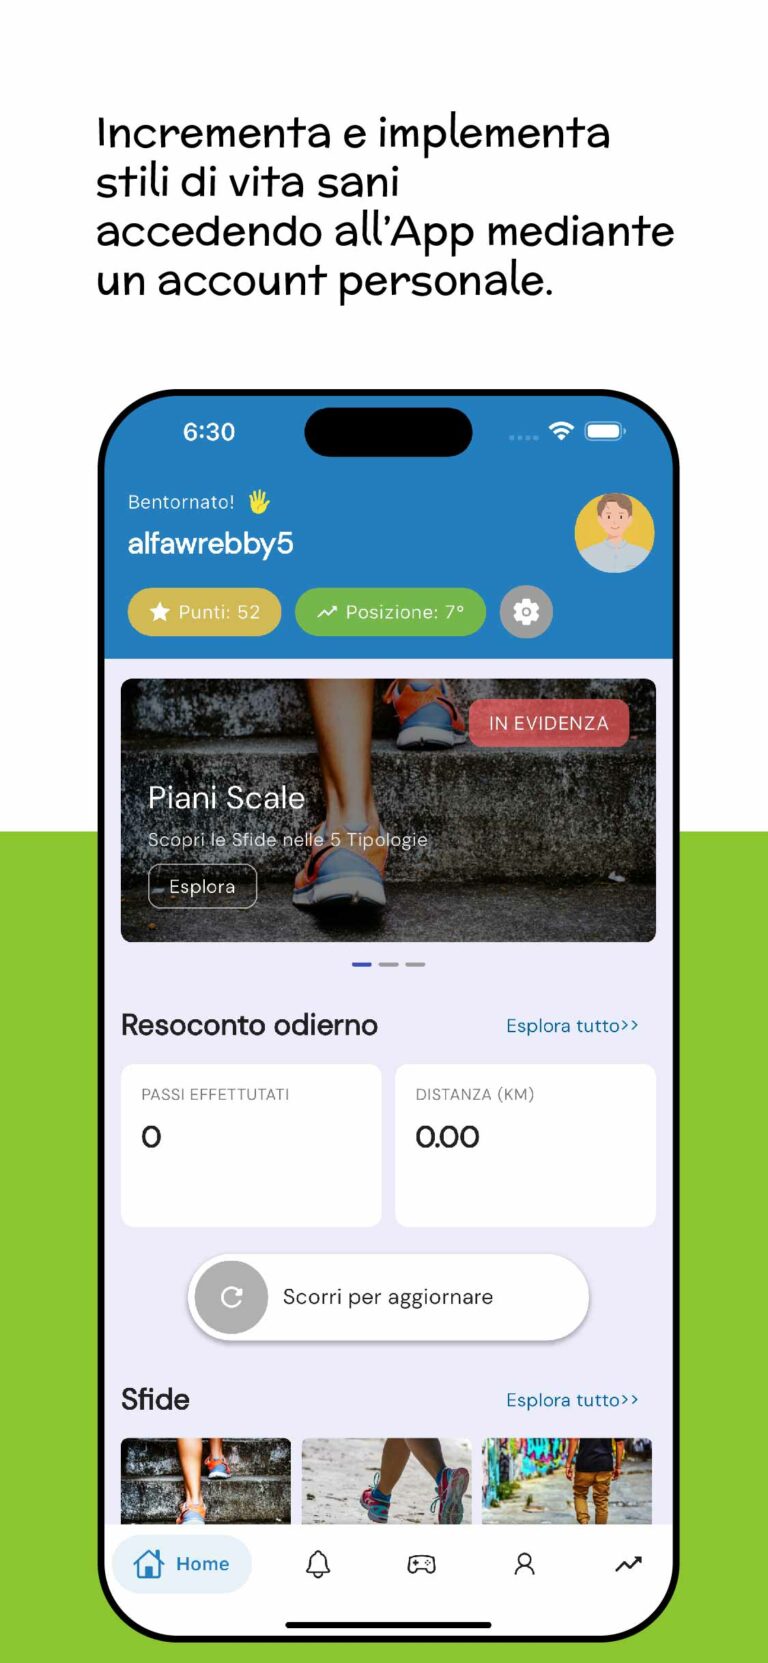 Apple Store: Slide 2 | Screenshot schermata principale app e scritta descrittiva: "Incrementa e implementa stili di vita sani accedendo all'App mediante un account personale"